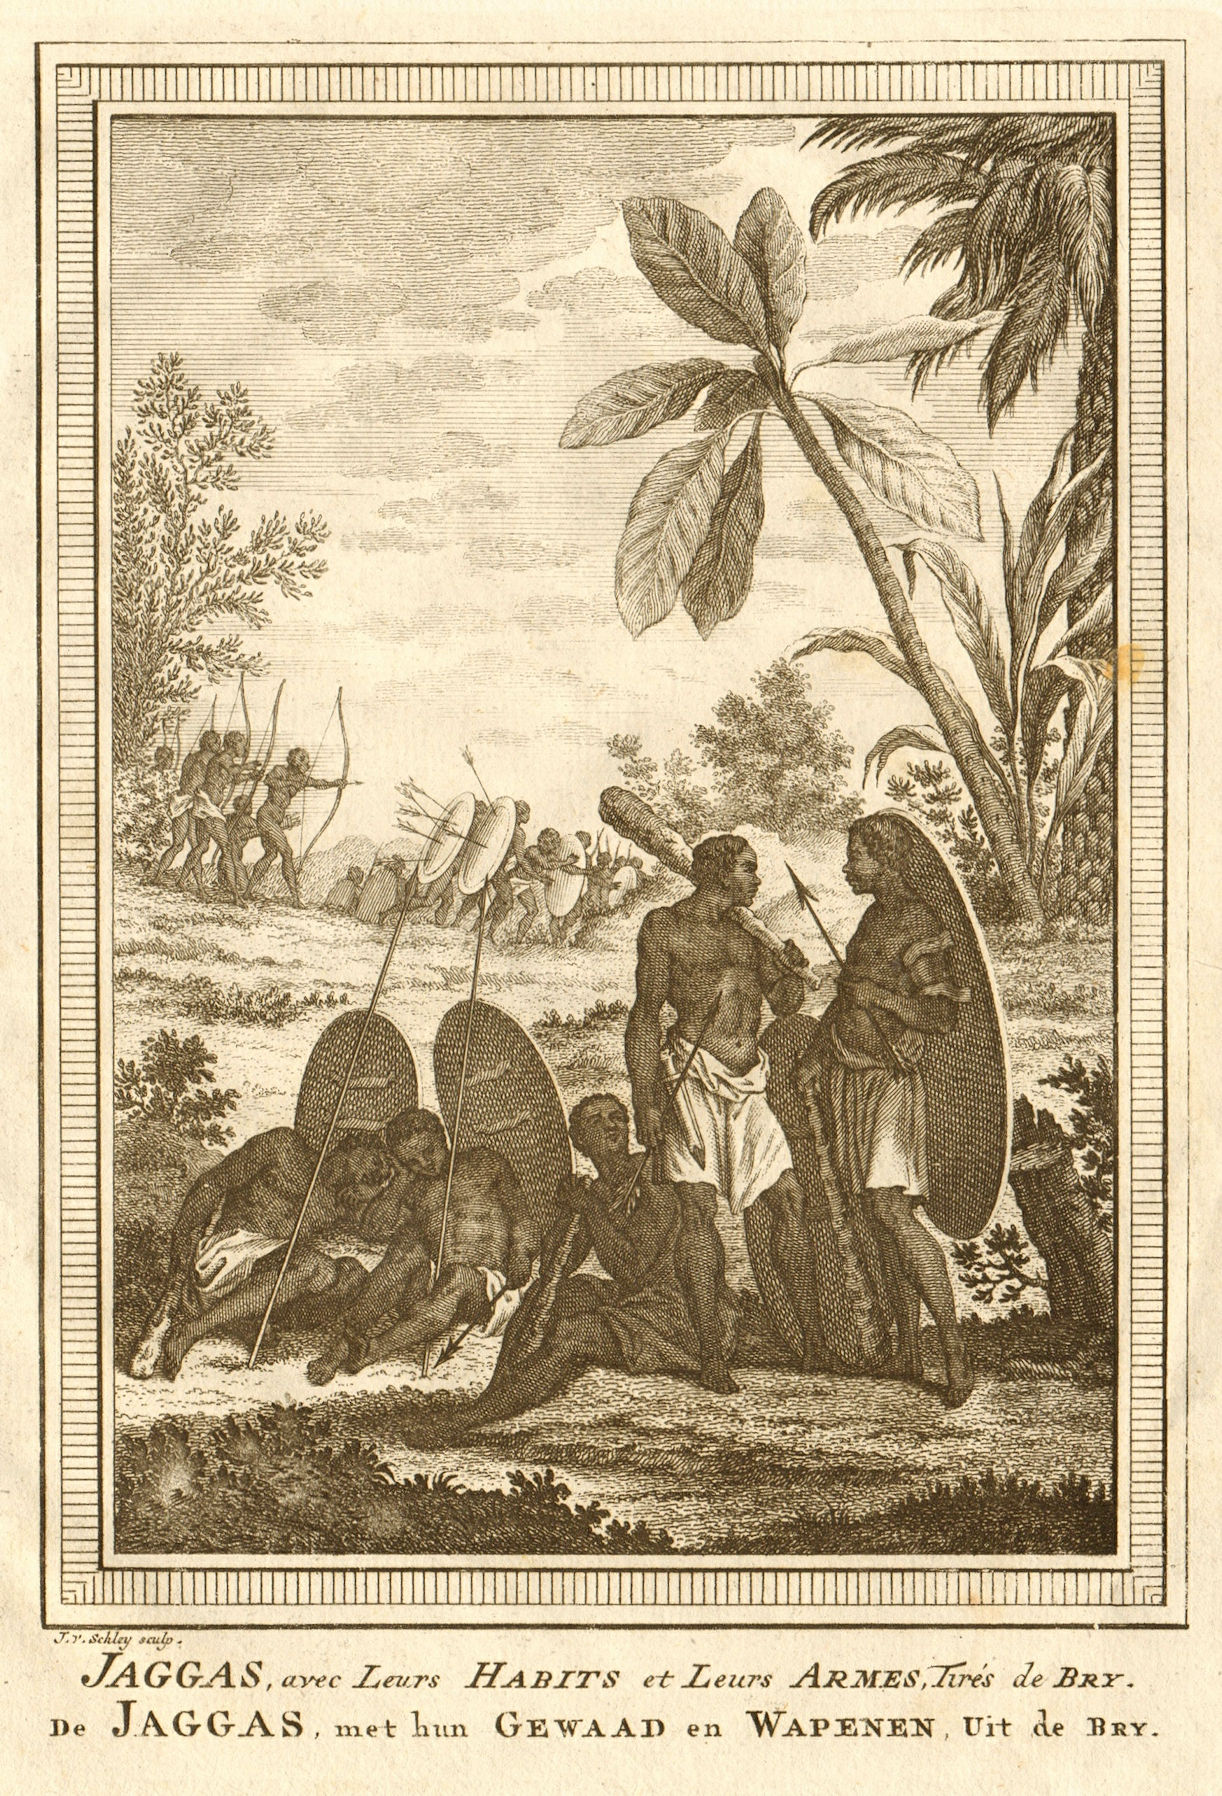 Associate Product Jaggas avec leurs habits & leurs Armes. Congo. Jagas people. Weapons SCHLEY 1748